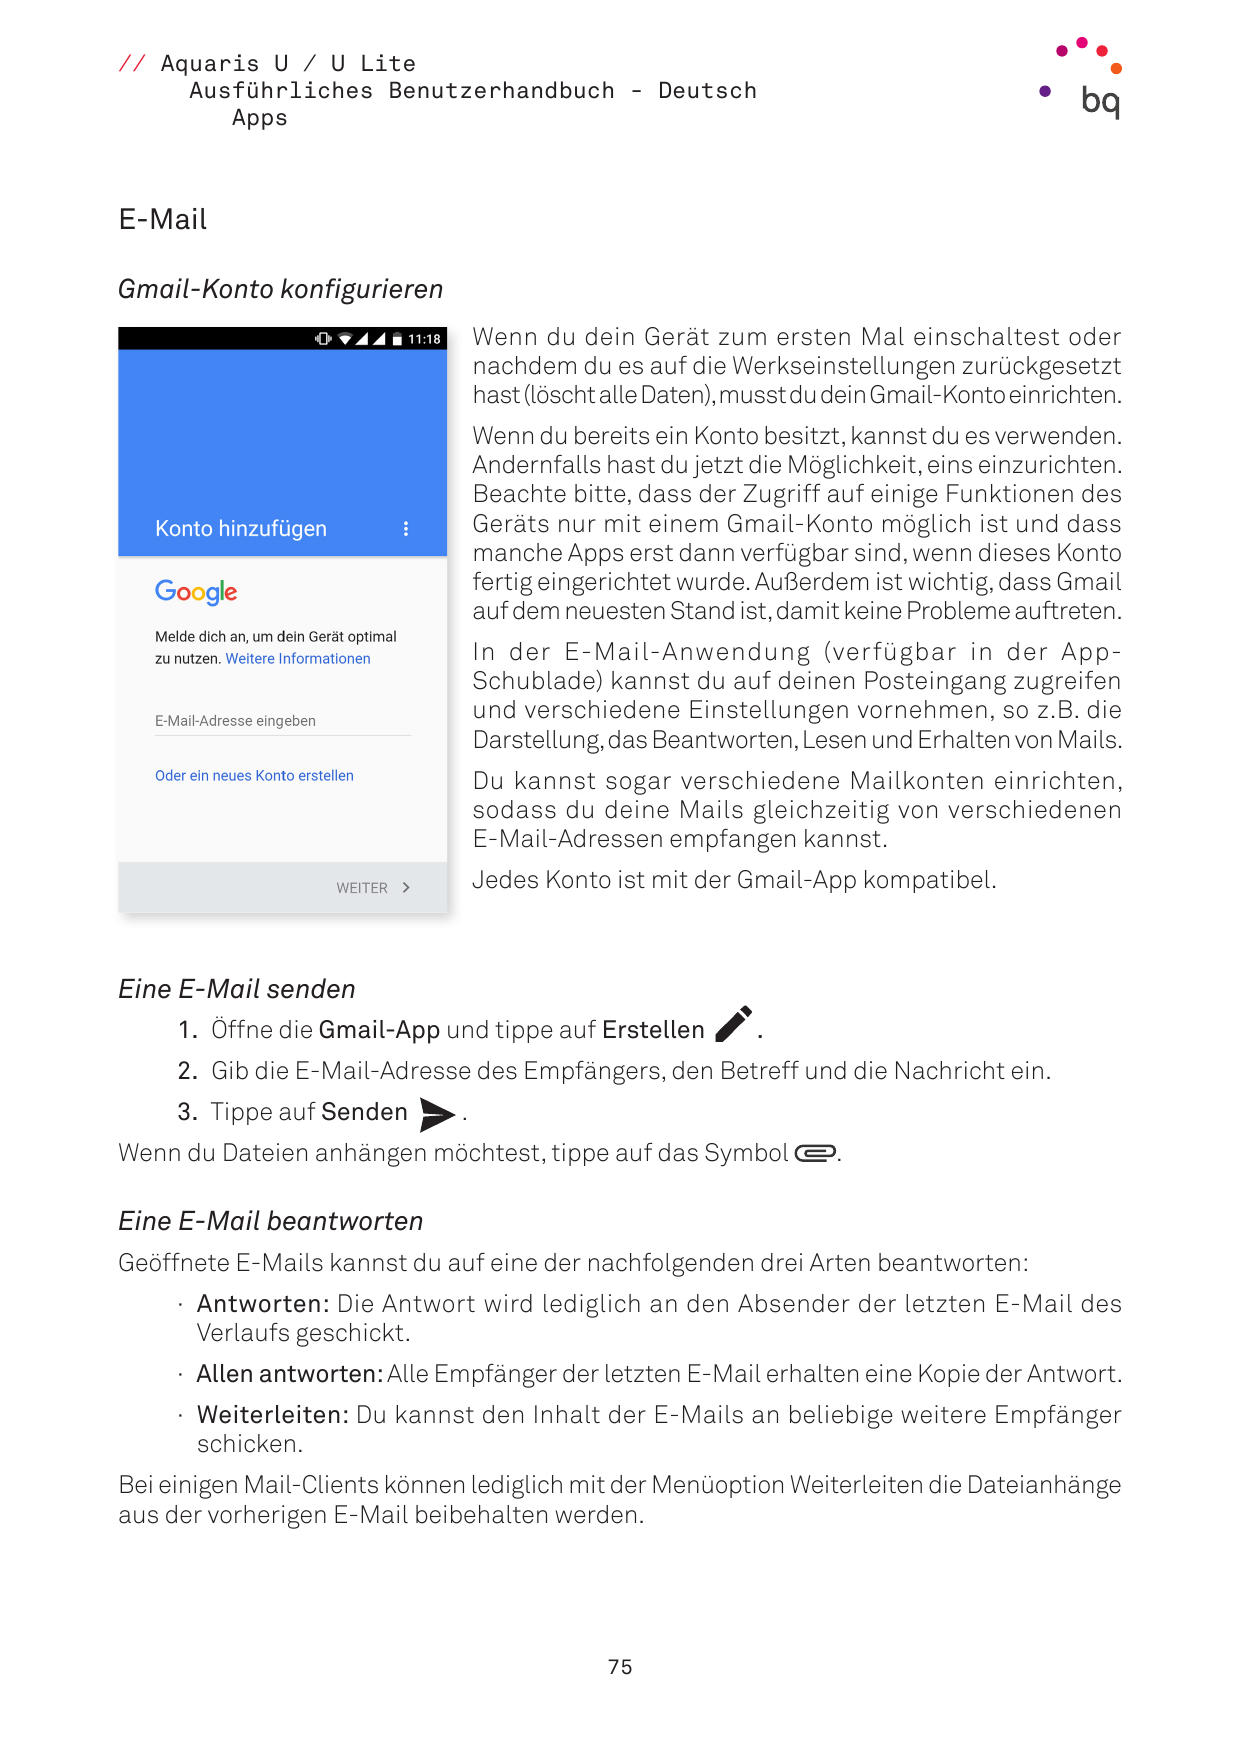 // Aquaris U / U LiteAusführliches Benutzerhandbuch - DeutschAppsE-MailGmail-Konto konfigurierenWenn du dein Gerät zum ersten Ma